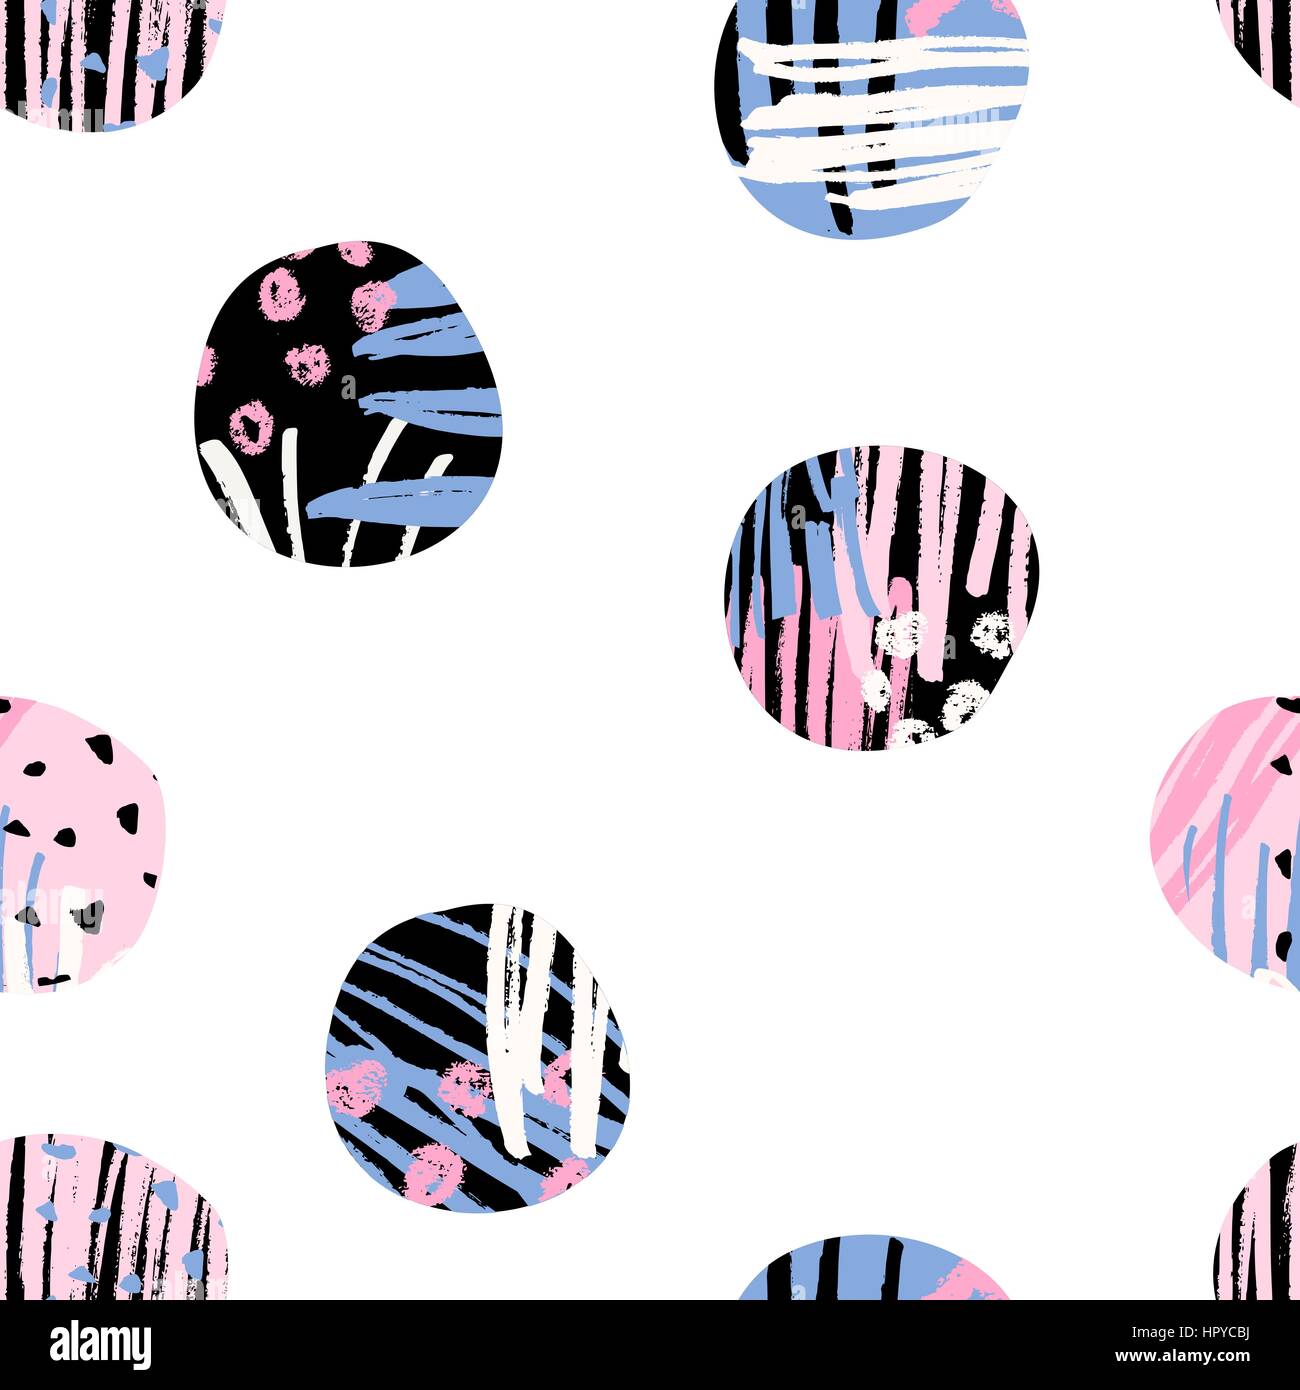 Seamless wiederholen Muster mit runden Formen in schwarz, blau und Pink texturiert, isoliert auf weißem Hintergrund. Stock Vektor